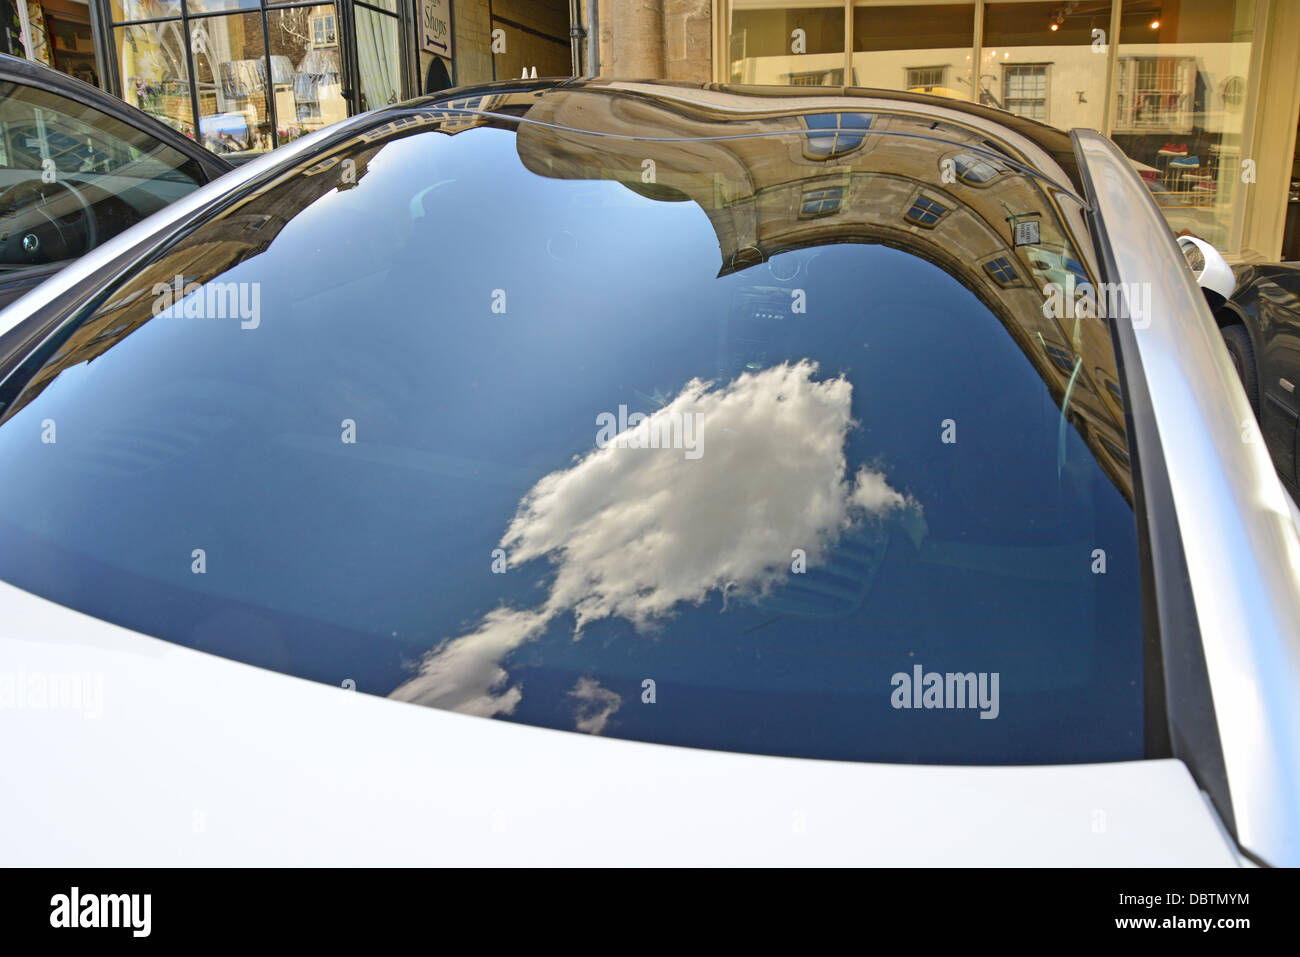 Reflection nuage sur la fenêtre arrière de la voiture, Northleach, Cotswolds, Gloucestershire, Angleterre, Royaume-Uni Banque D'Images